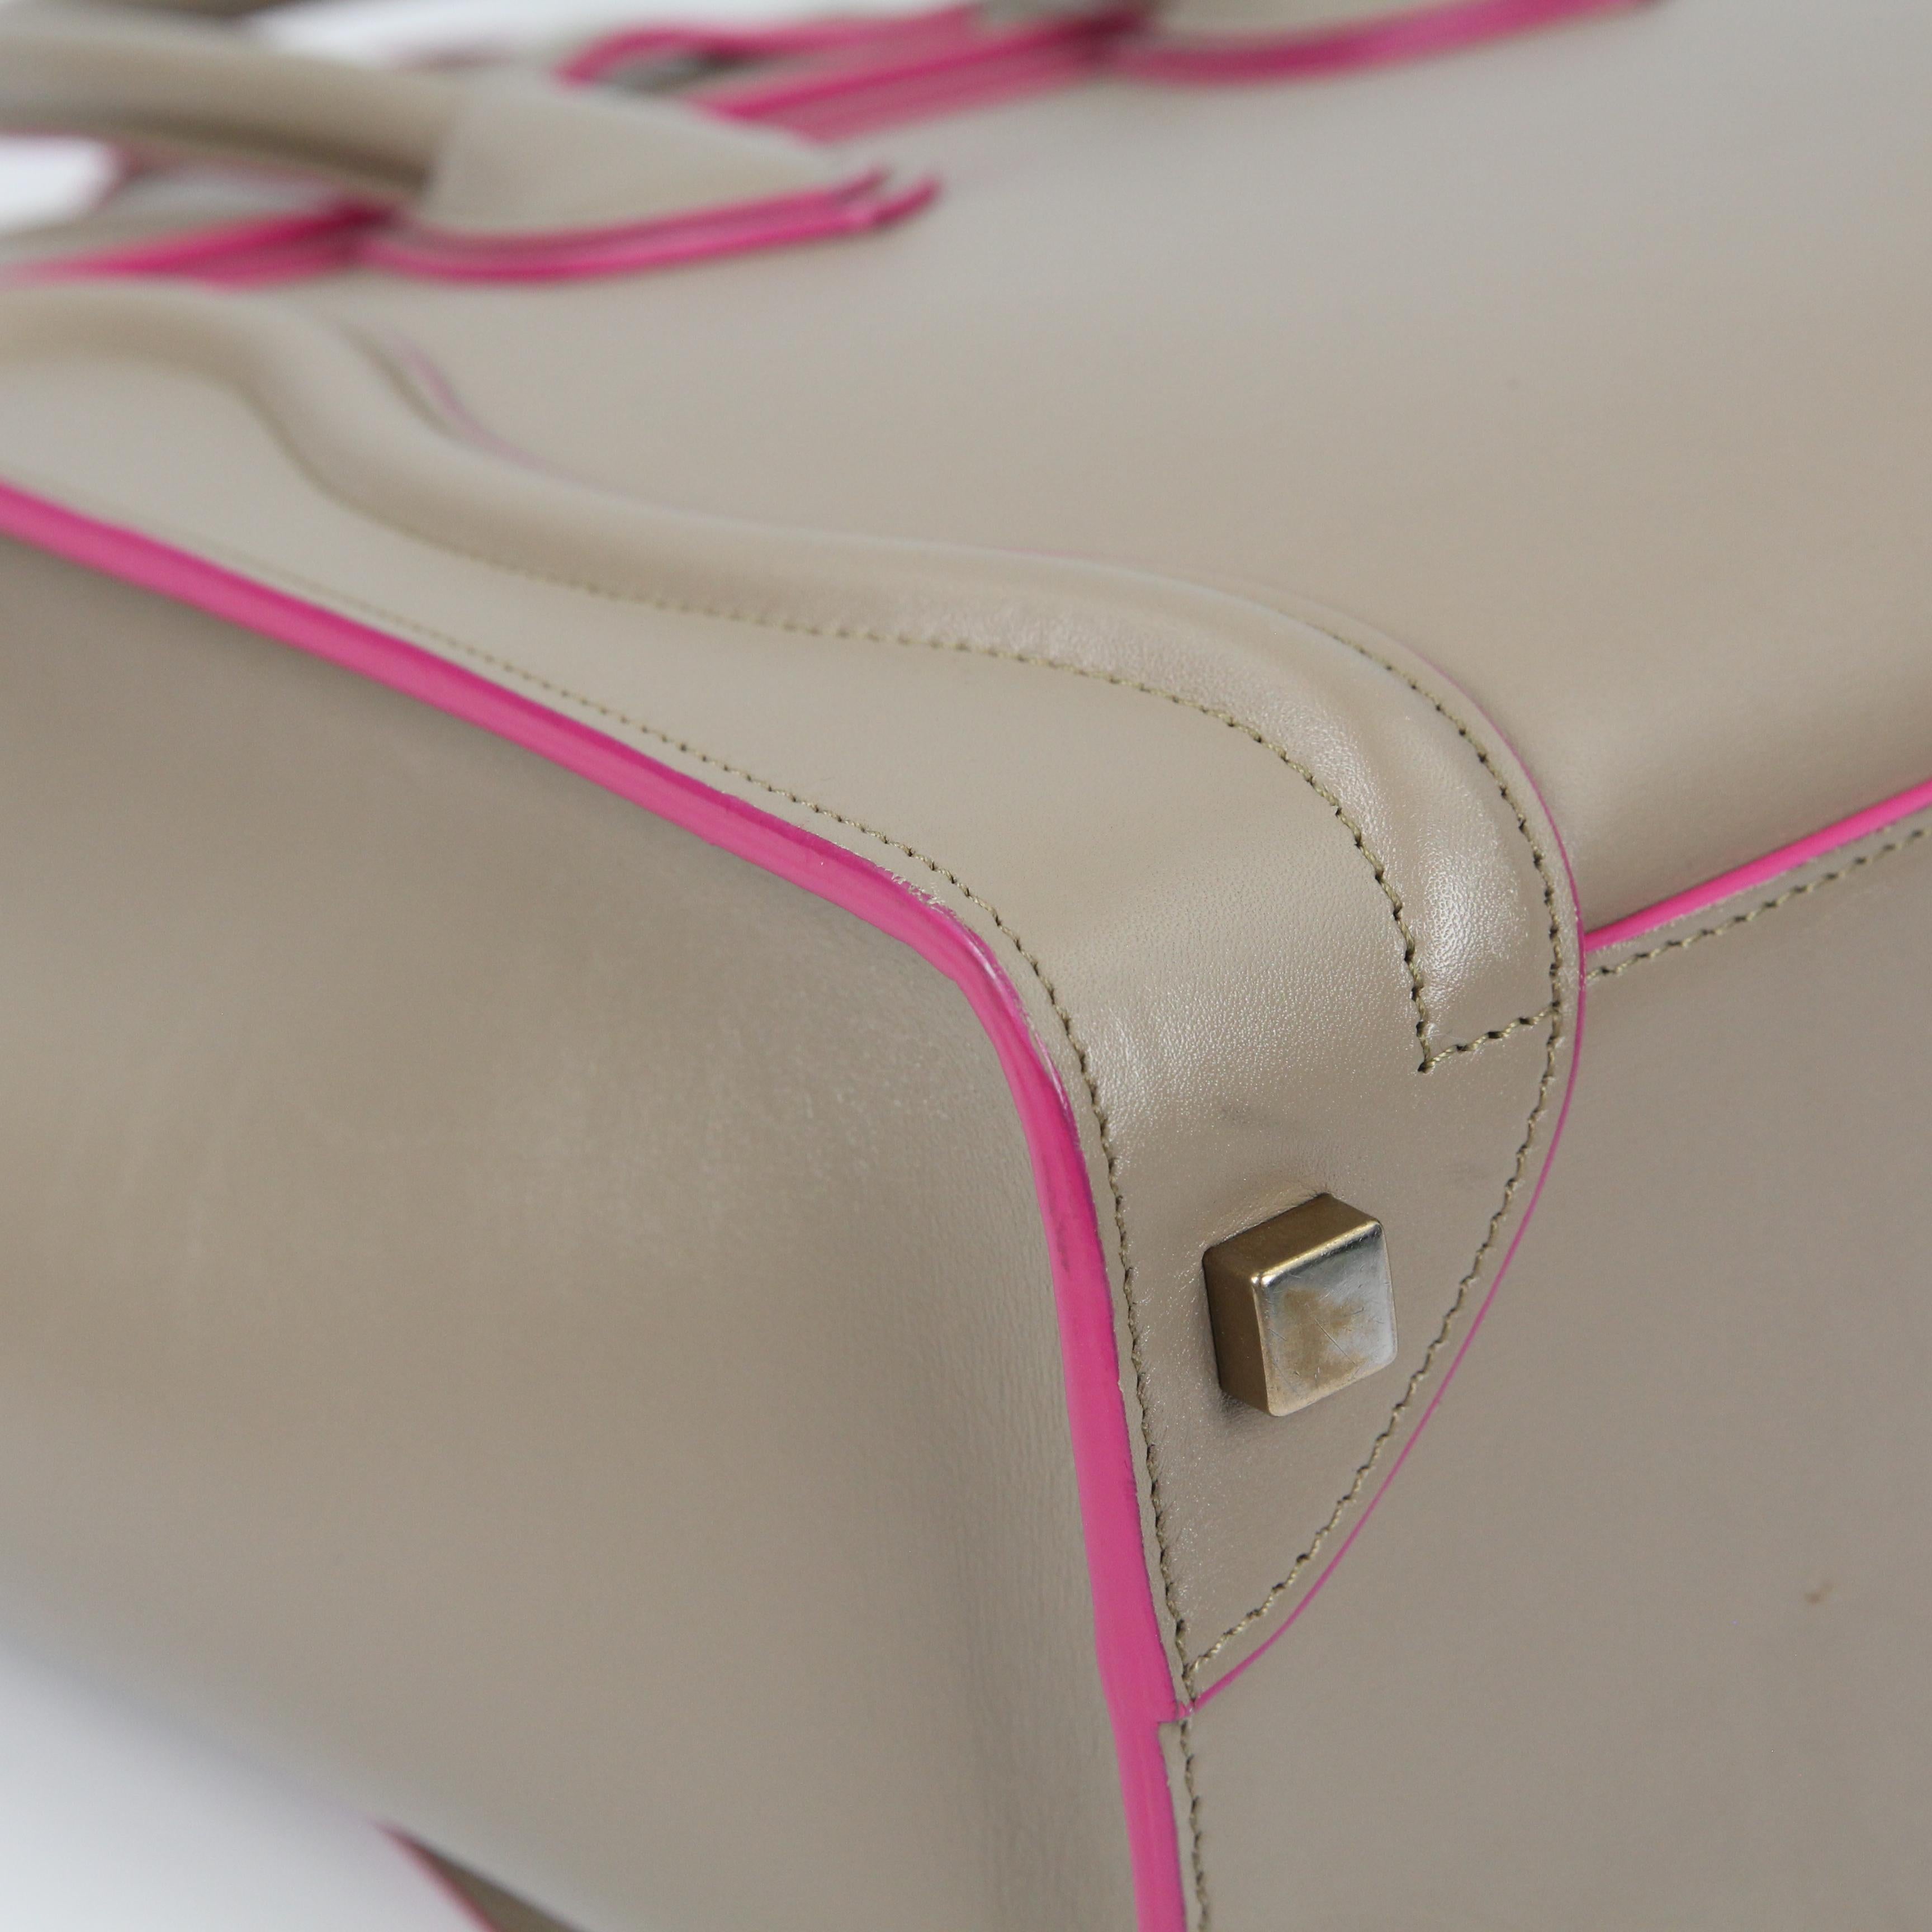 Celine Luggage leather handbag For Sale 3